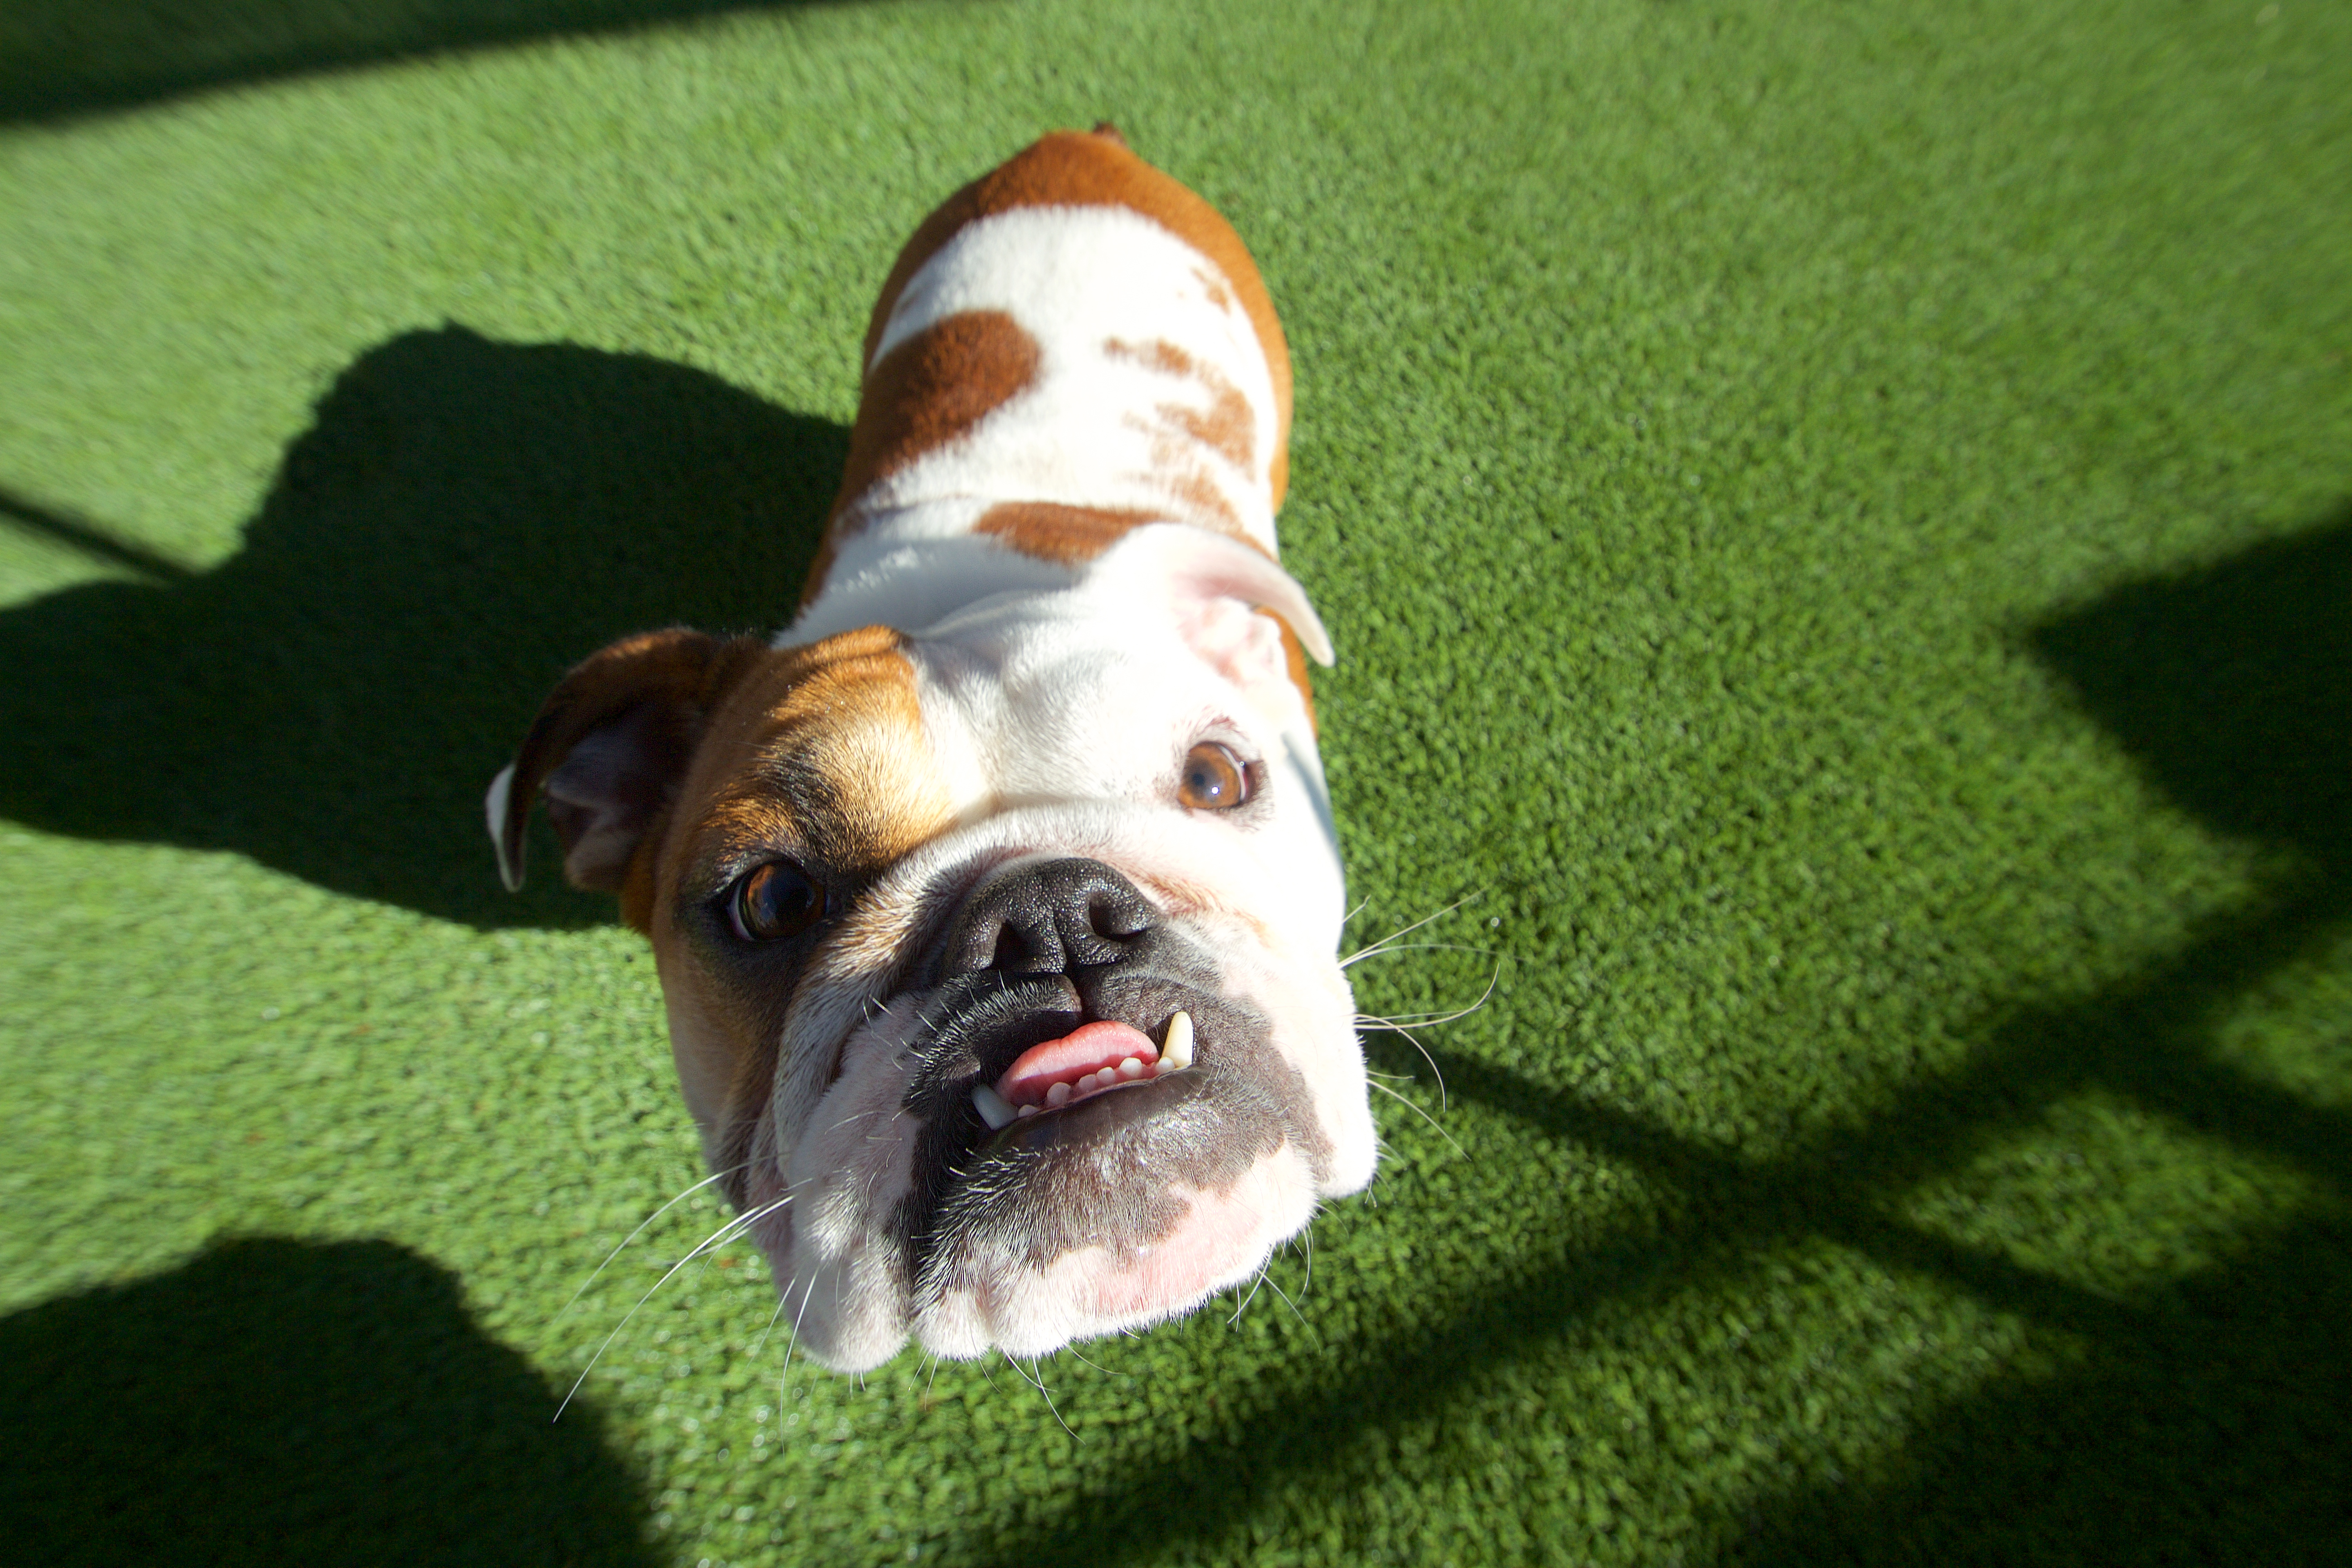 Bulldog looking up at camera on artificial grass